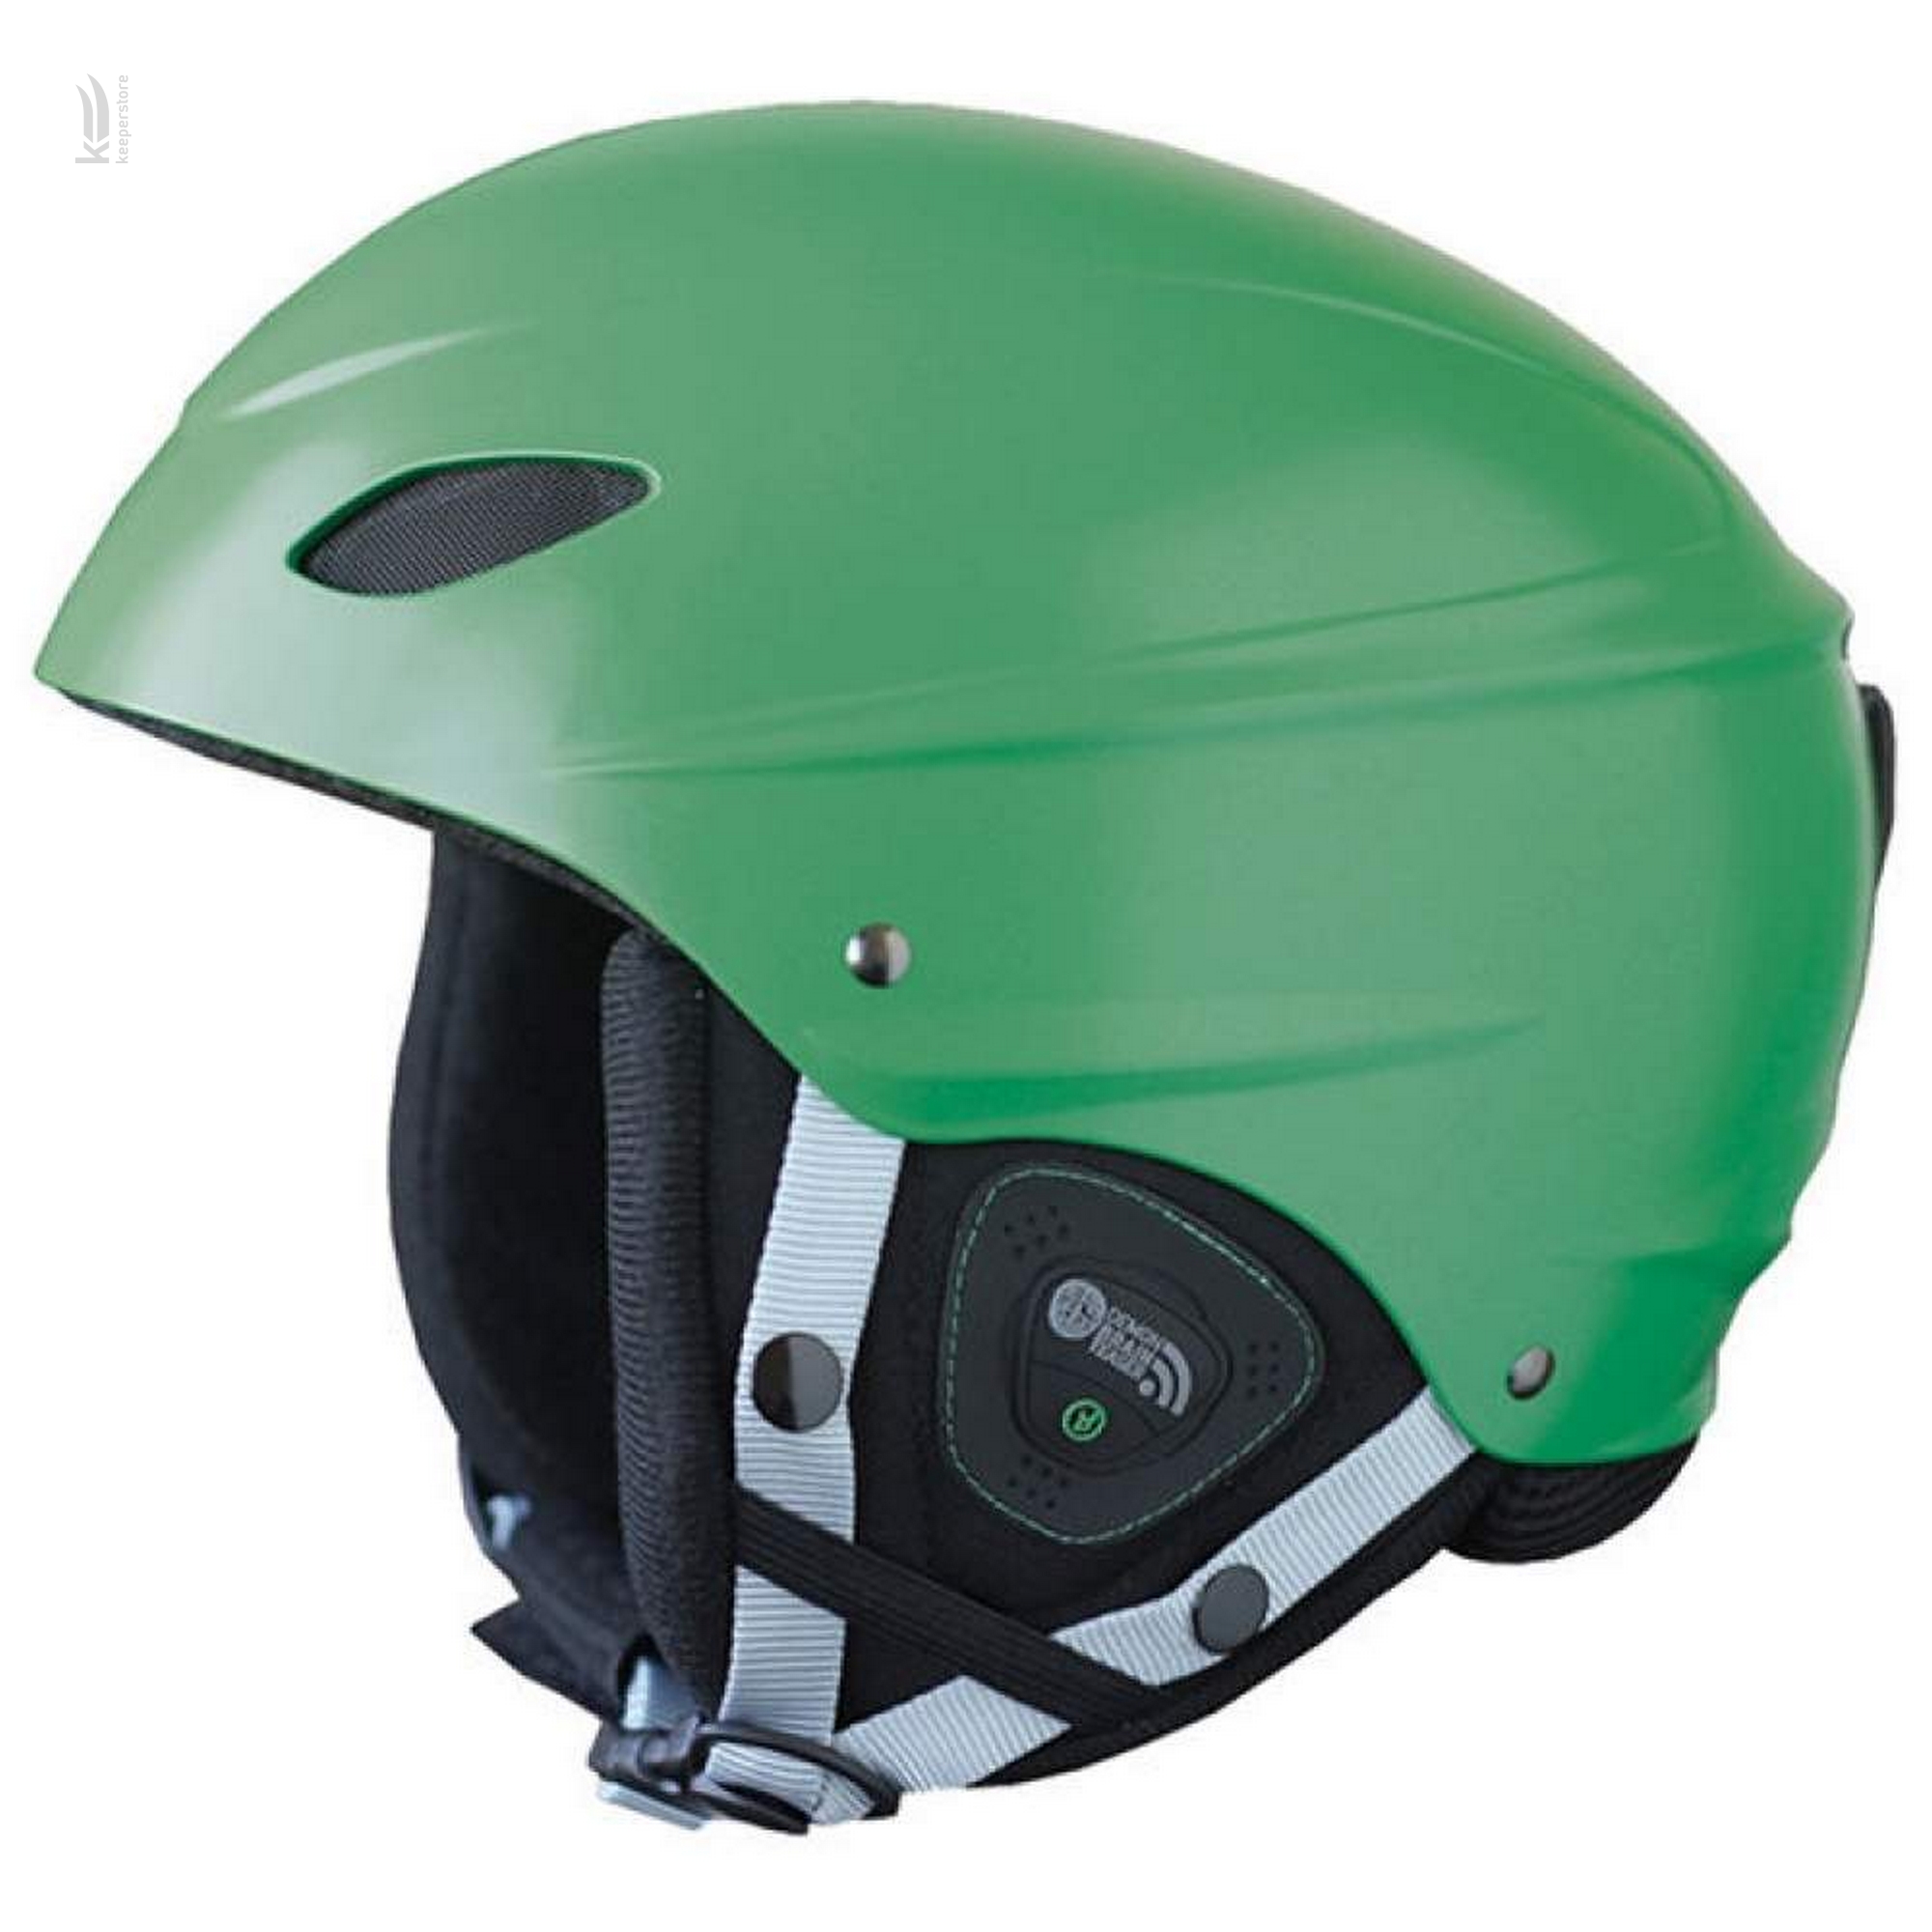 Цена шлем для сноубординга Demon Phantom Audio Green (S) в Киеве